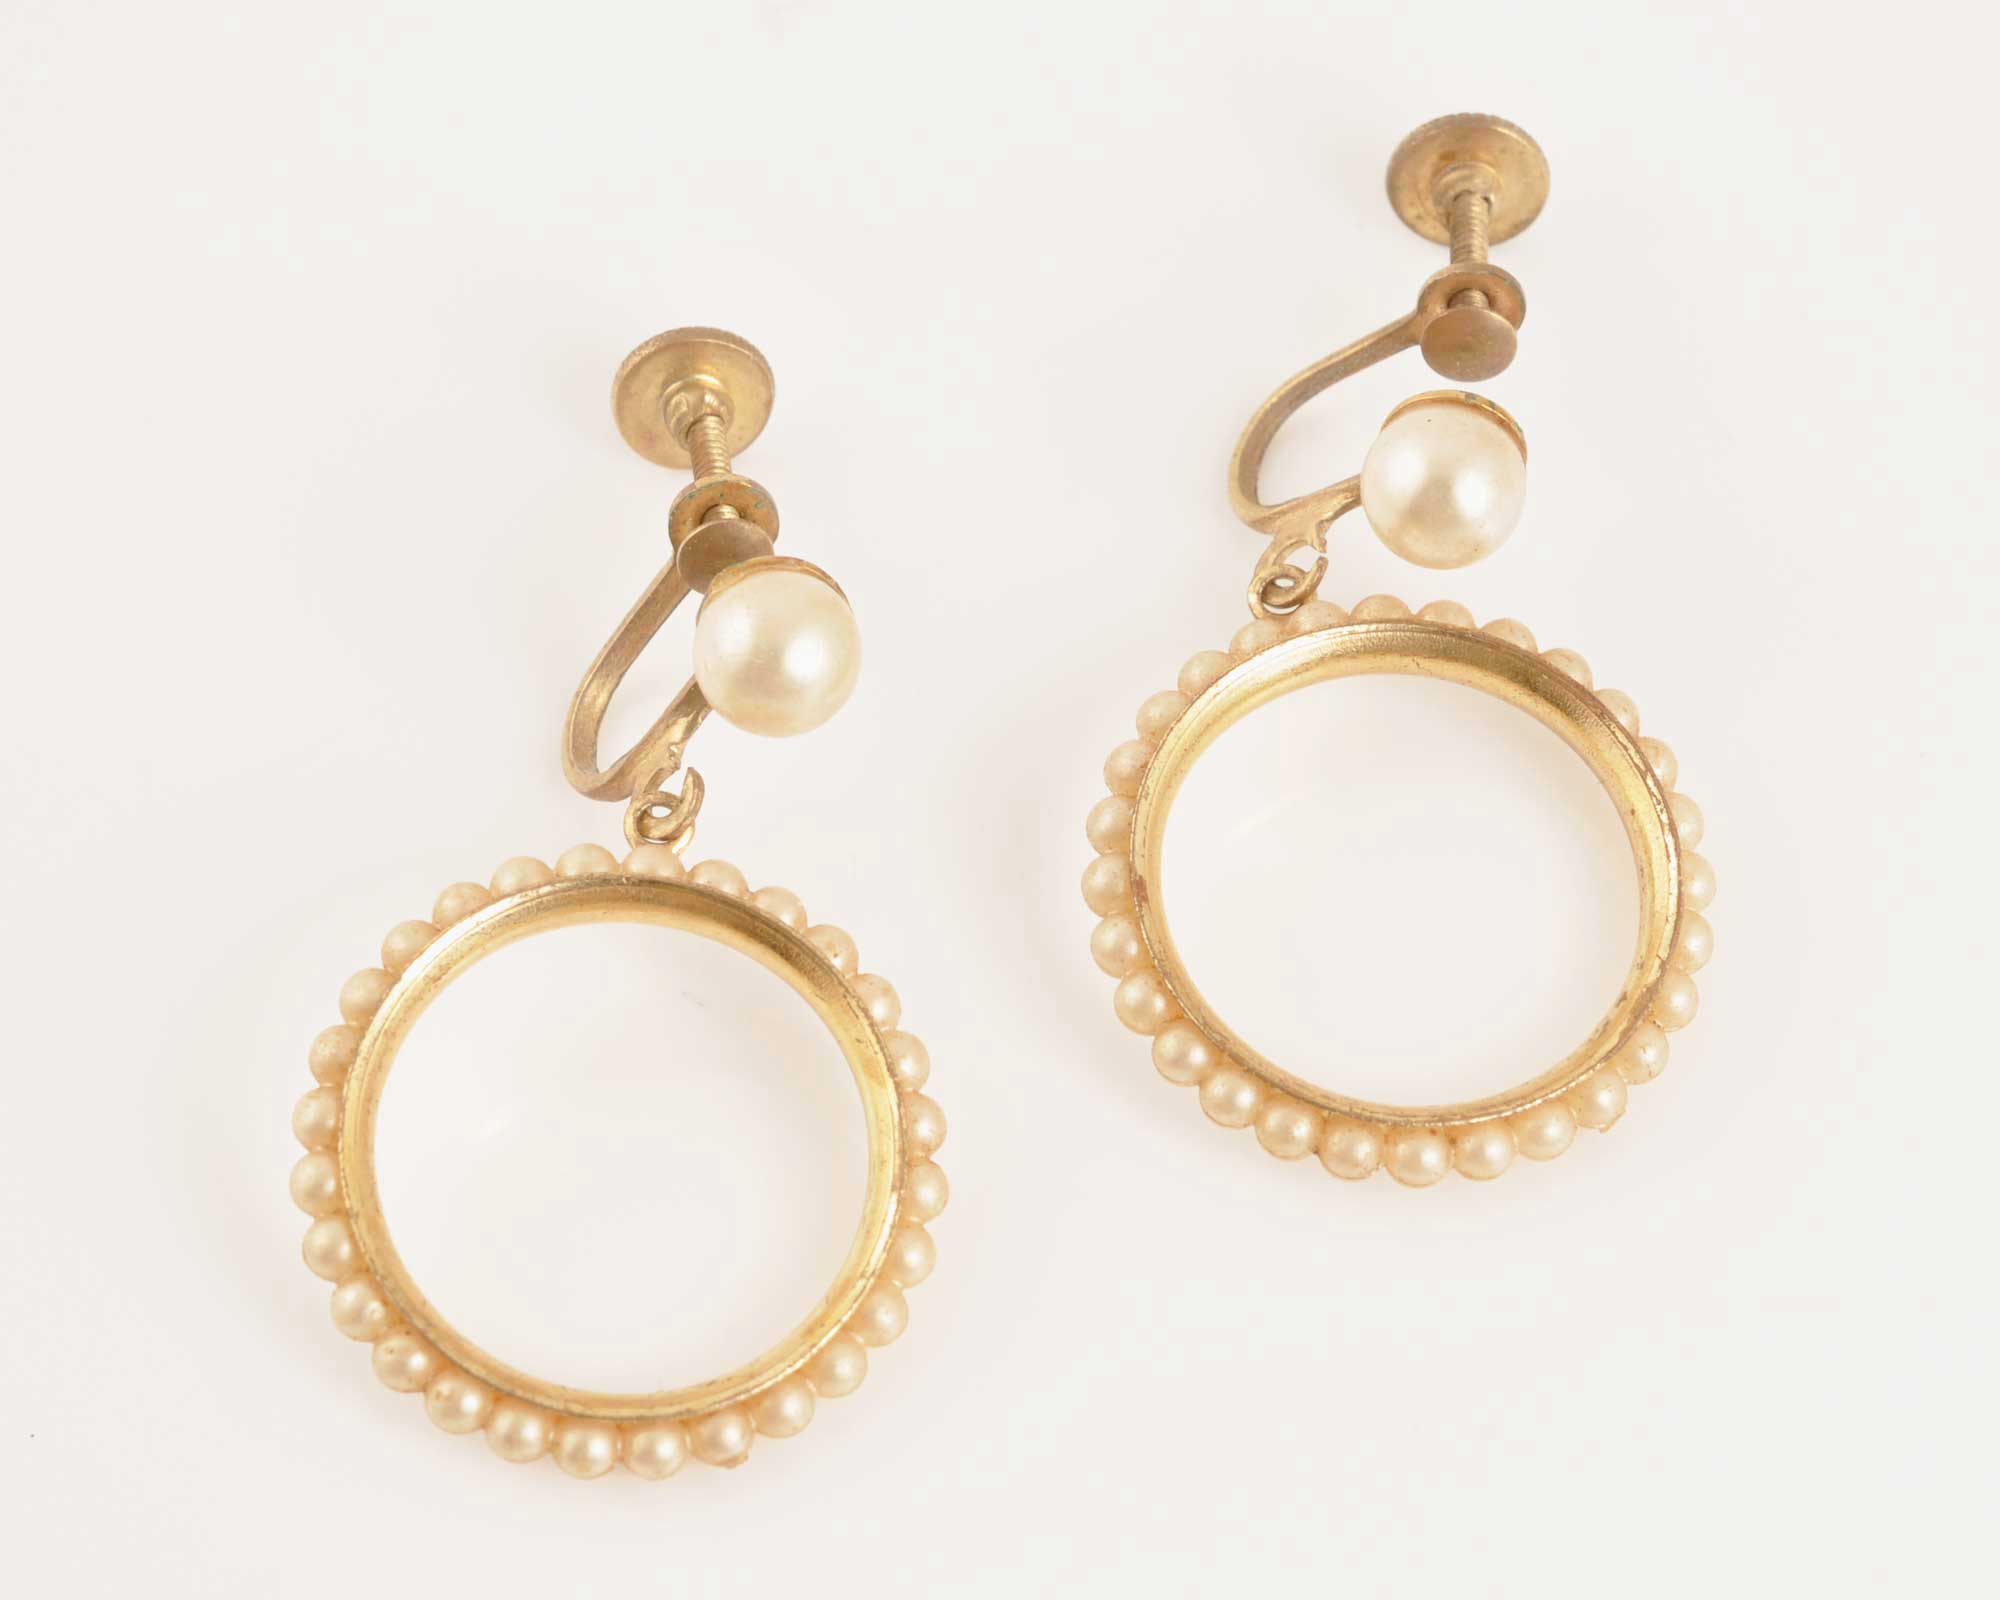 Vintage Jewelry-Trendy Pearl Hoop Dangle Earrings-Lever Back